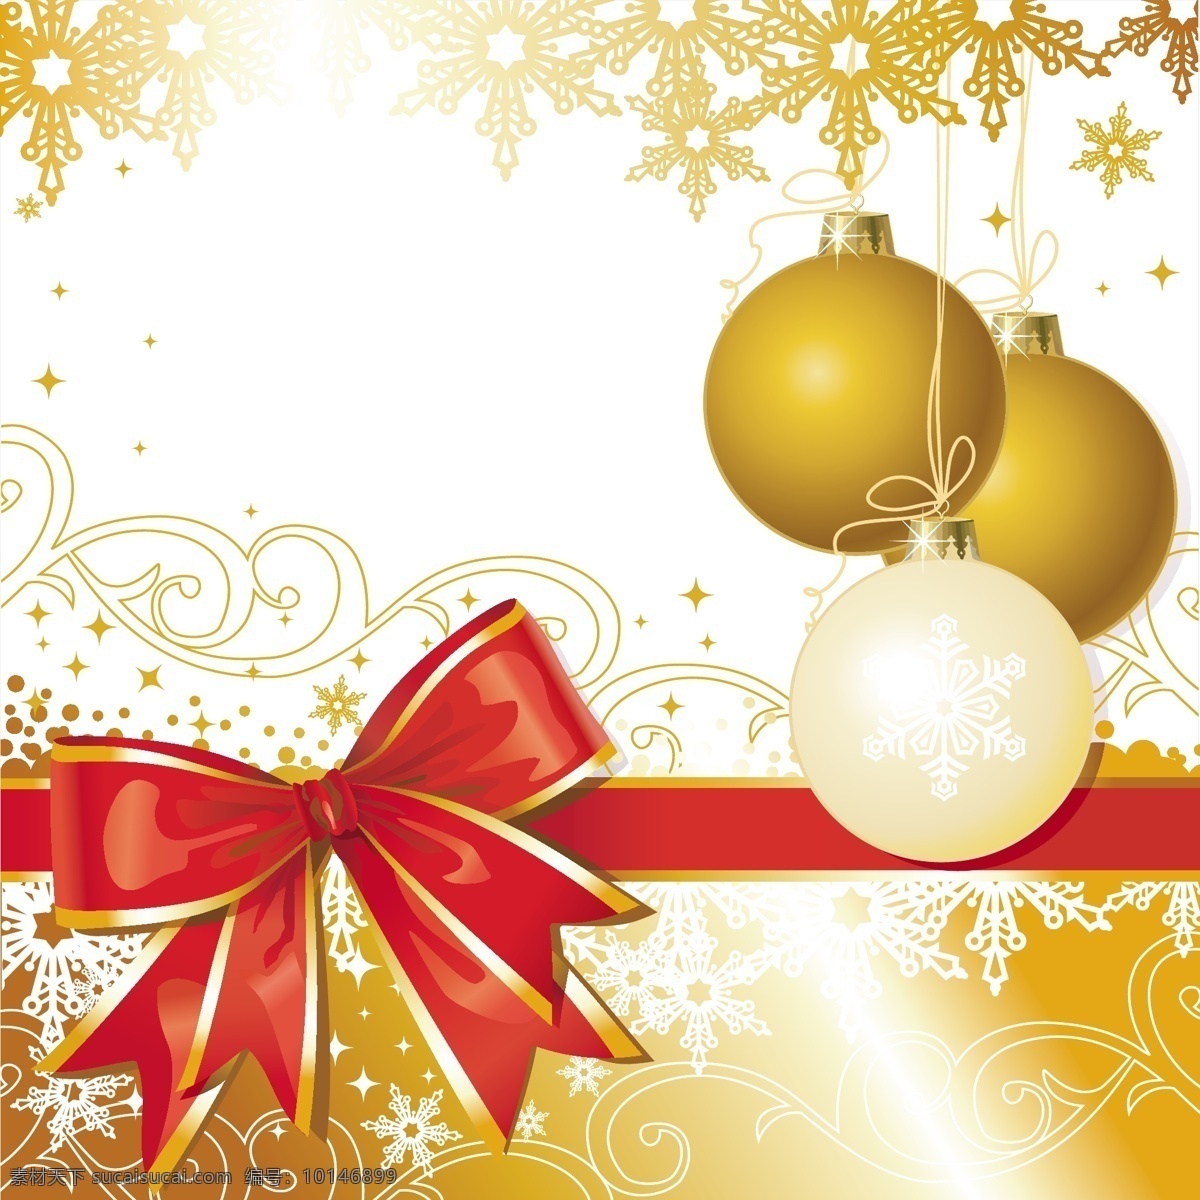 圣诞 铃铛 矢量图 圣诞铃铛 圣诞节 merry christmas 礼节 蝴蝶结 包装带 金色底纹 平面设计